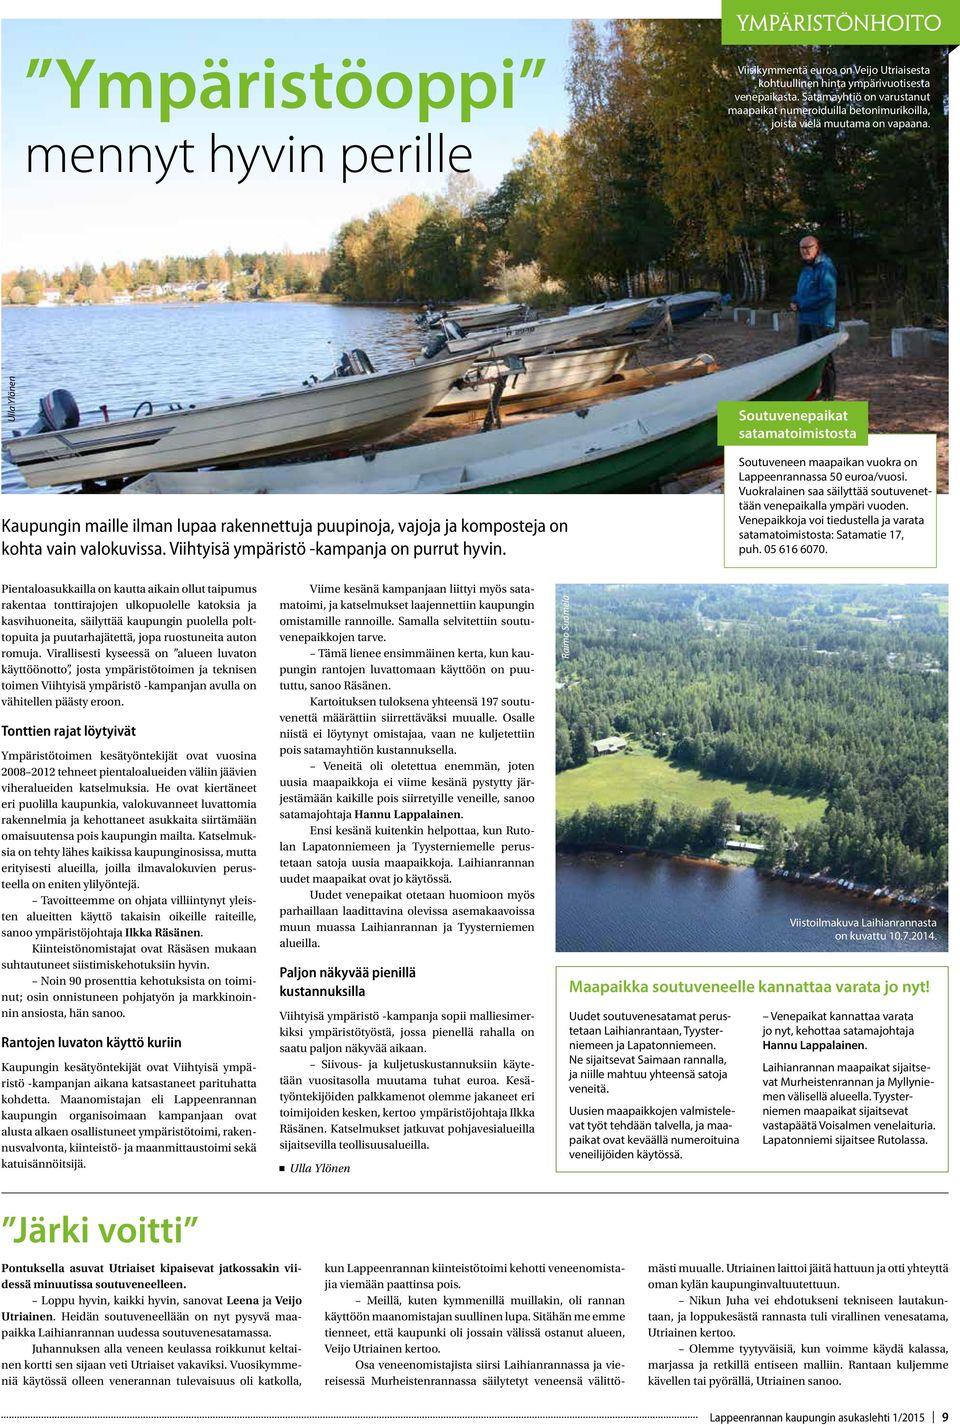 Ulla Ylönen Soutuvenepaikat satamatoimistosta Kaupungin maille ilman lupaa rakennettuja puupinoja, vajoja ja komposteja on kohta vain valokuvissa. Viihtyisä ympäristö -kampanja on purrut hyvin.